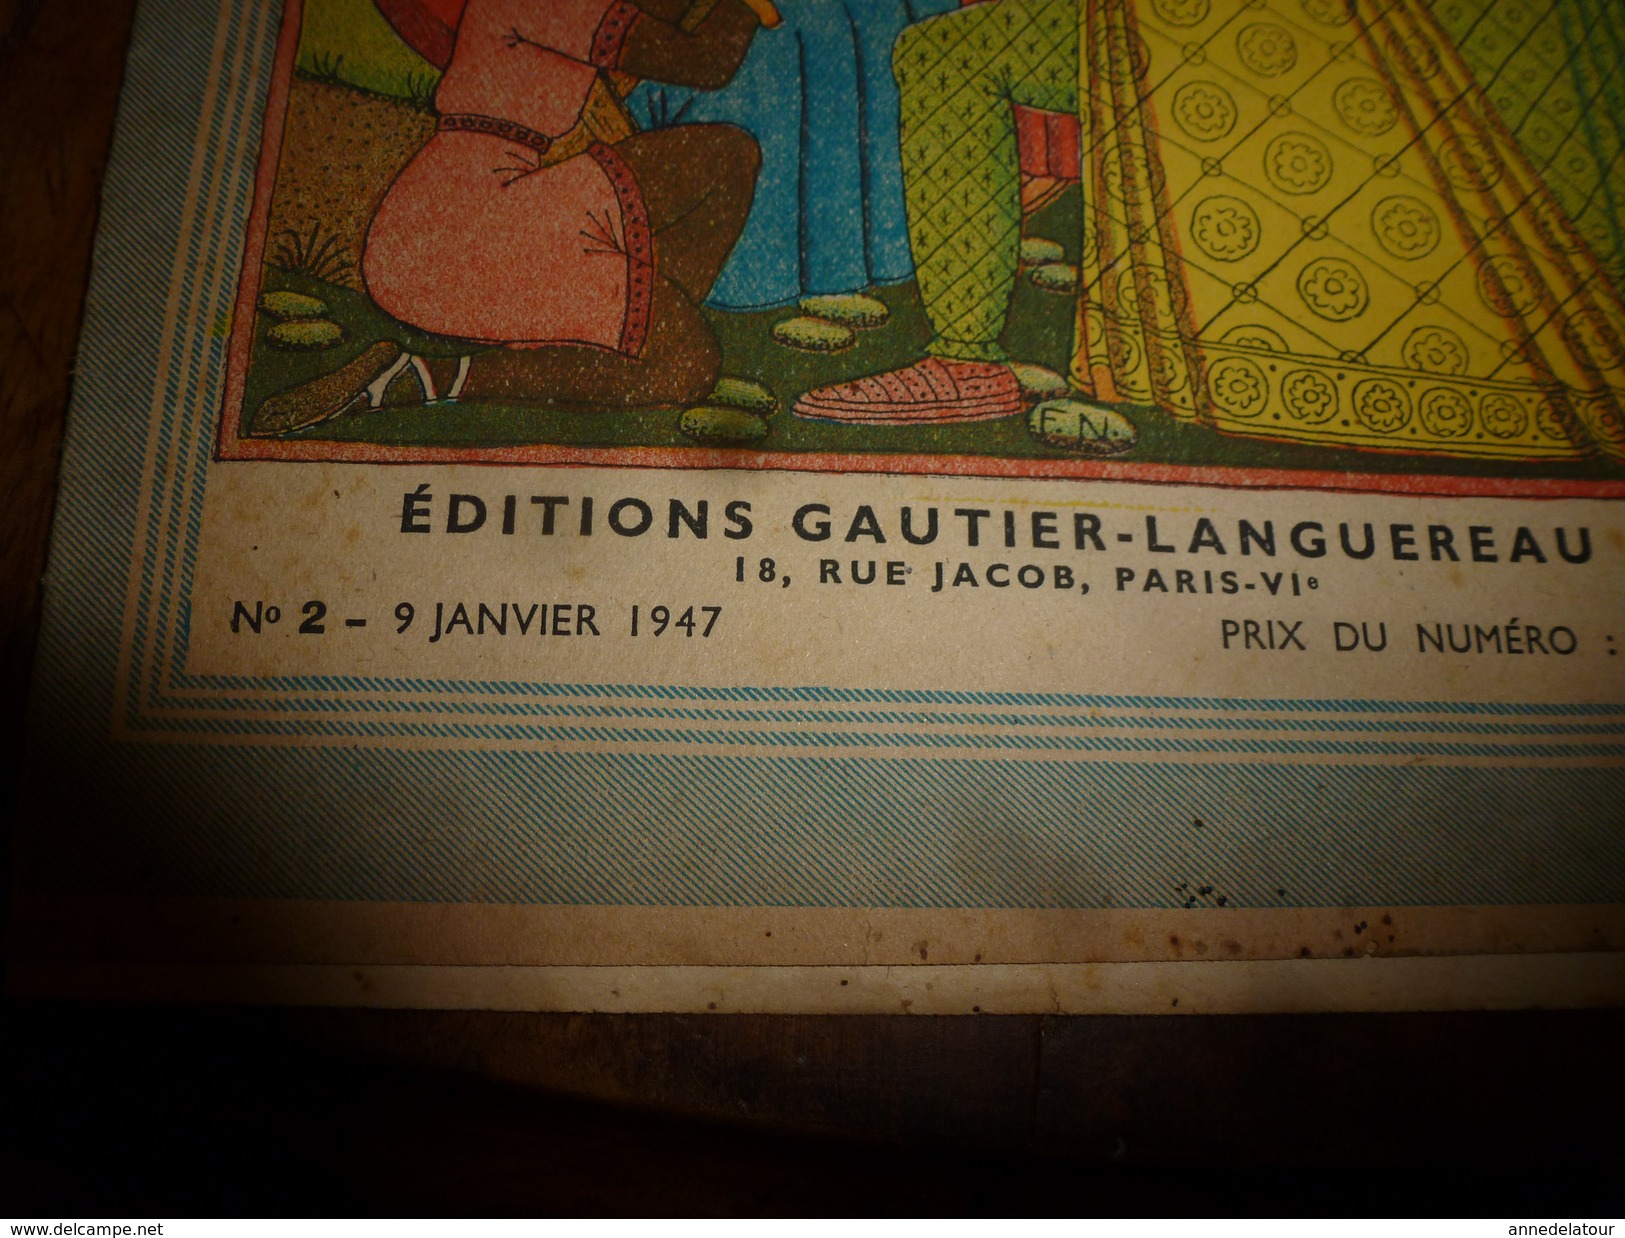 1947 LSDS (La Semaine De Suzette): Histoire De Gustave Wasa, Roi De Suède ; Etc - La Semaine De Suzette